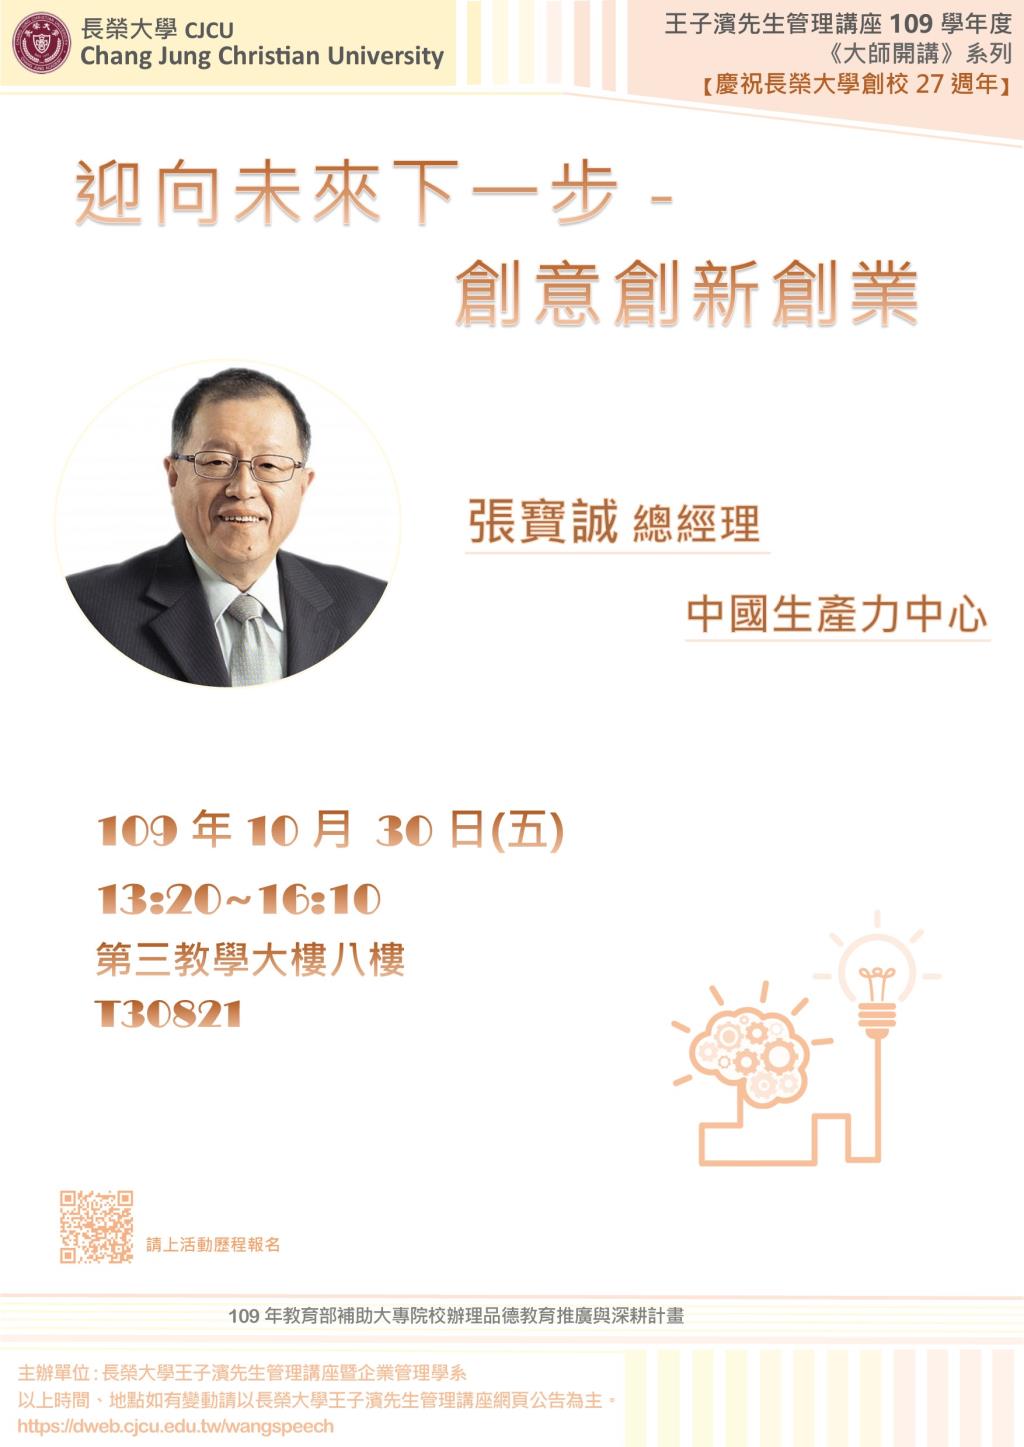 敬邀參加本週五下午(10/30)王子濱先生管理講座--迎向未來下一步-創意創新創業 中國生產力中心 張寶誠總經理